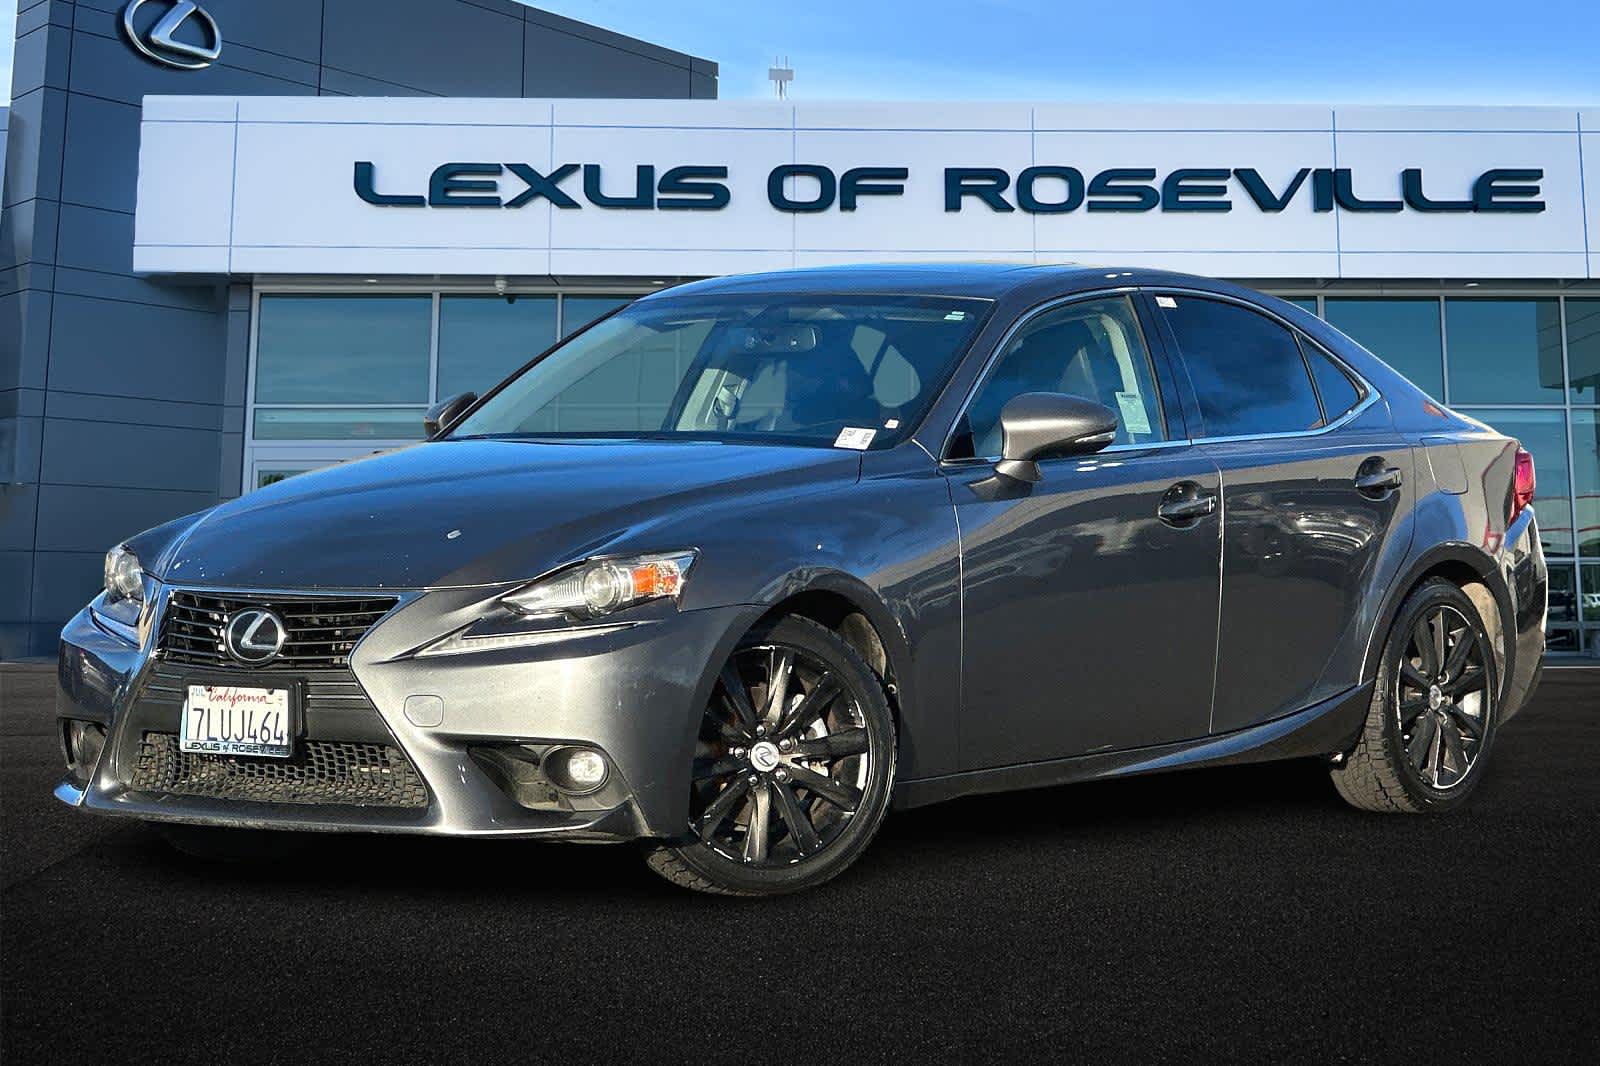 2015 Lexus IS 250 -
                Roseville, CA